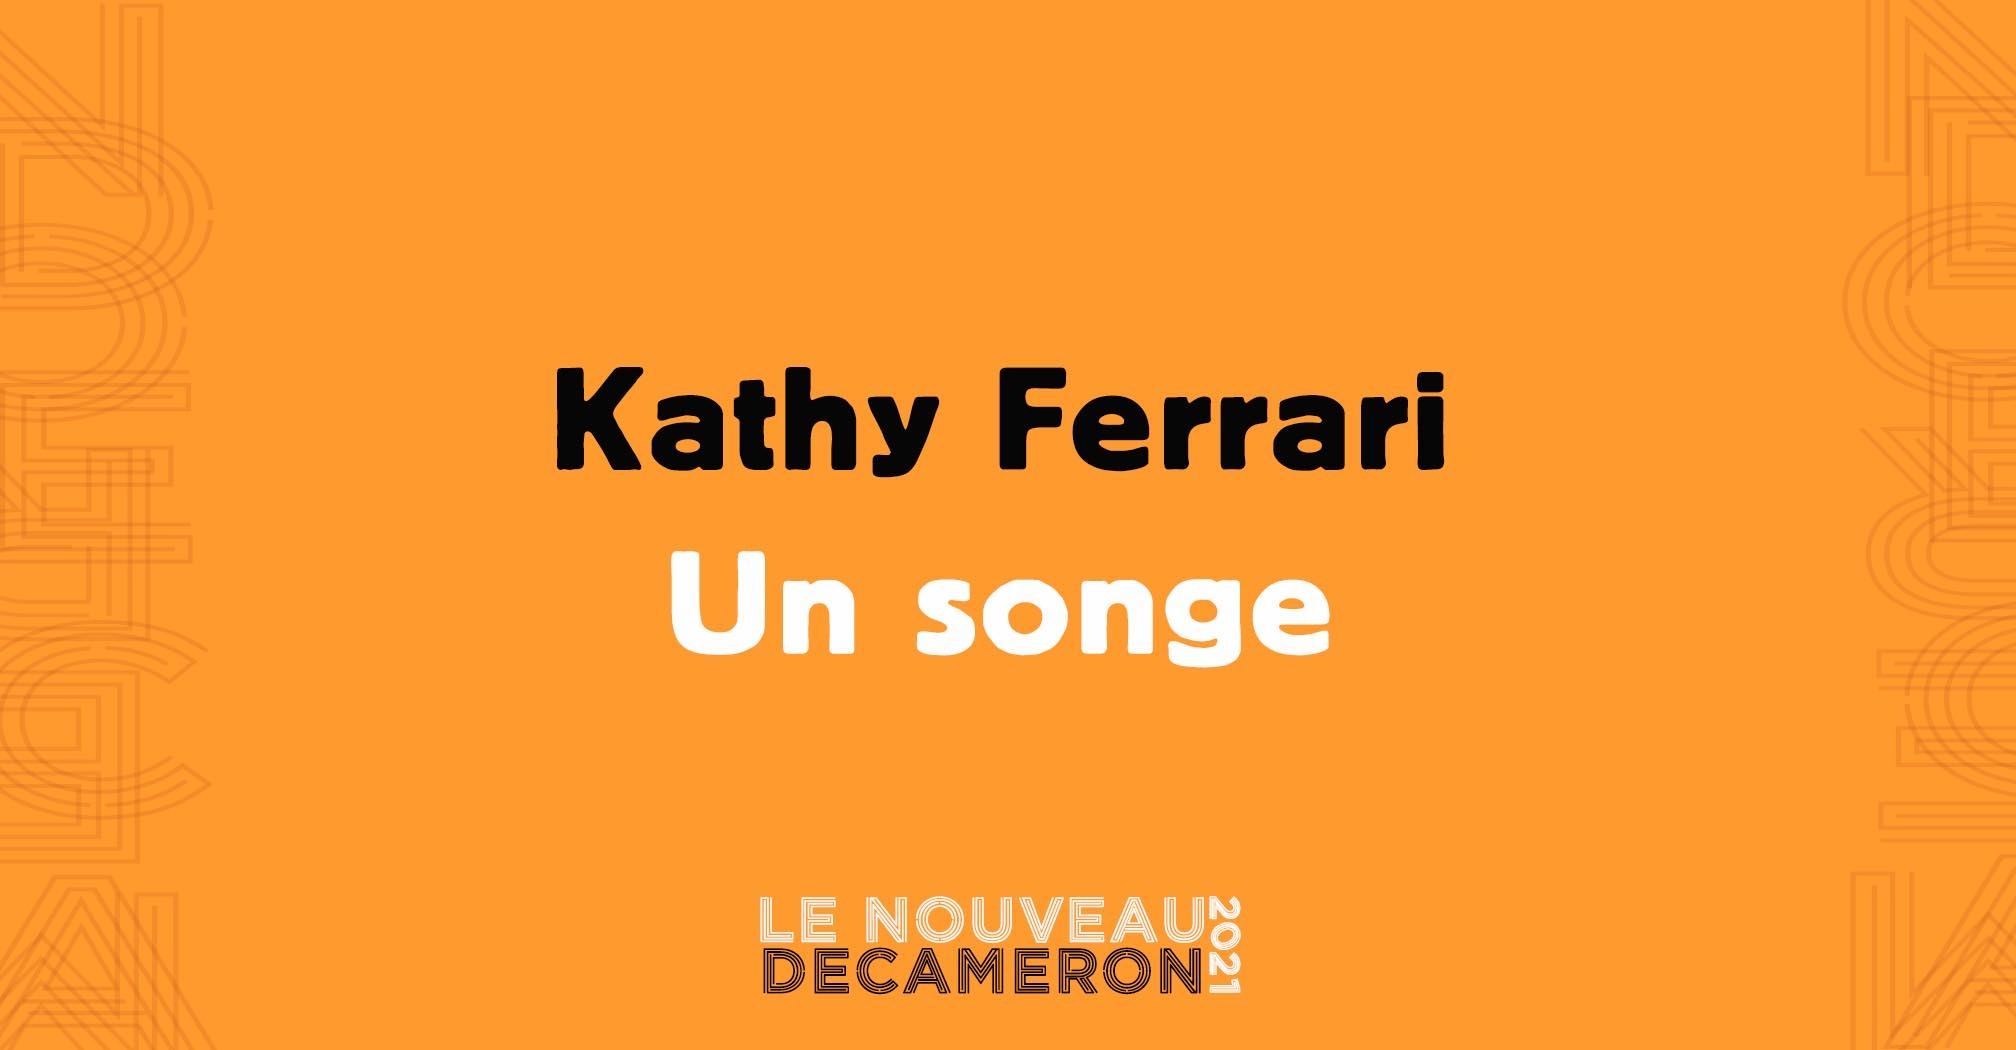 Kathy Ferrari - Un songe